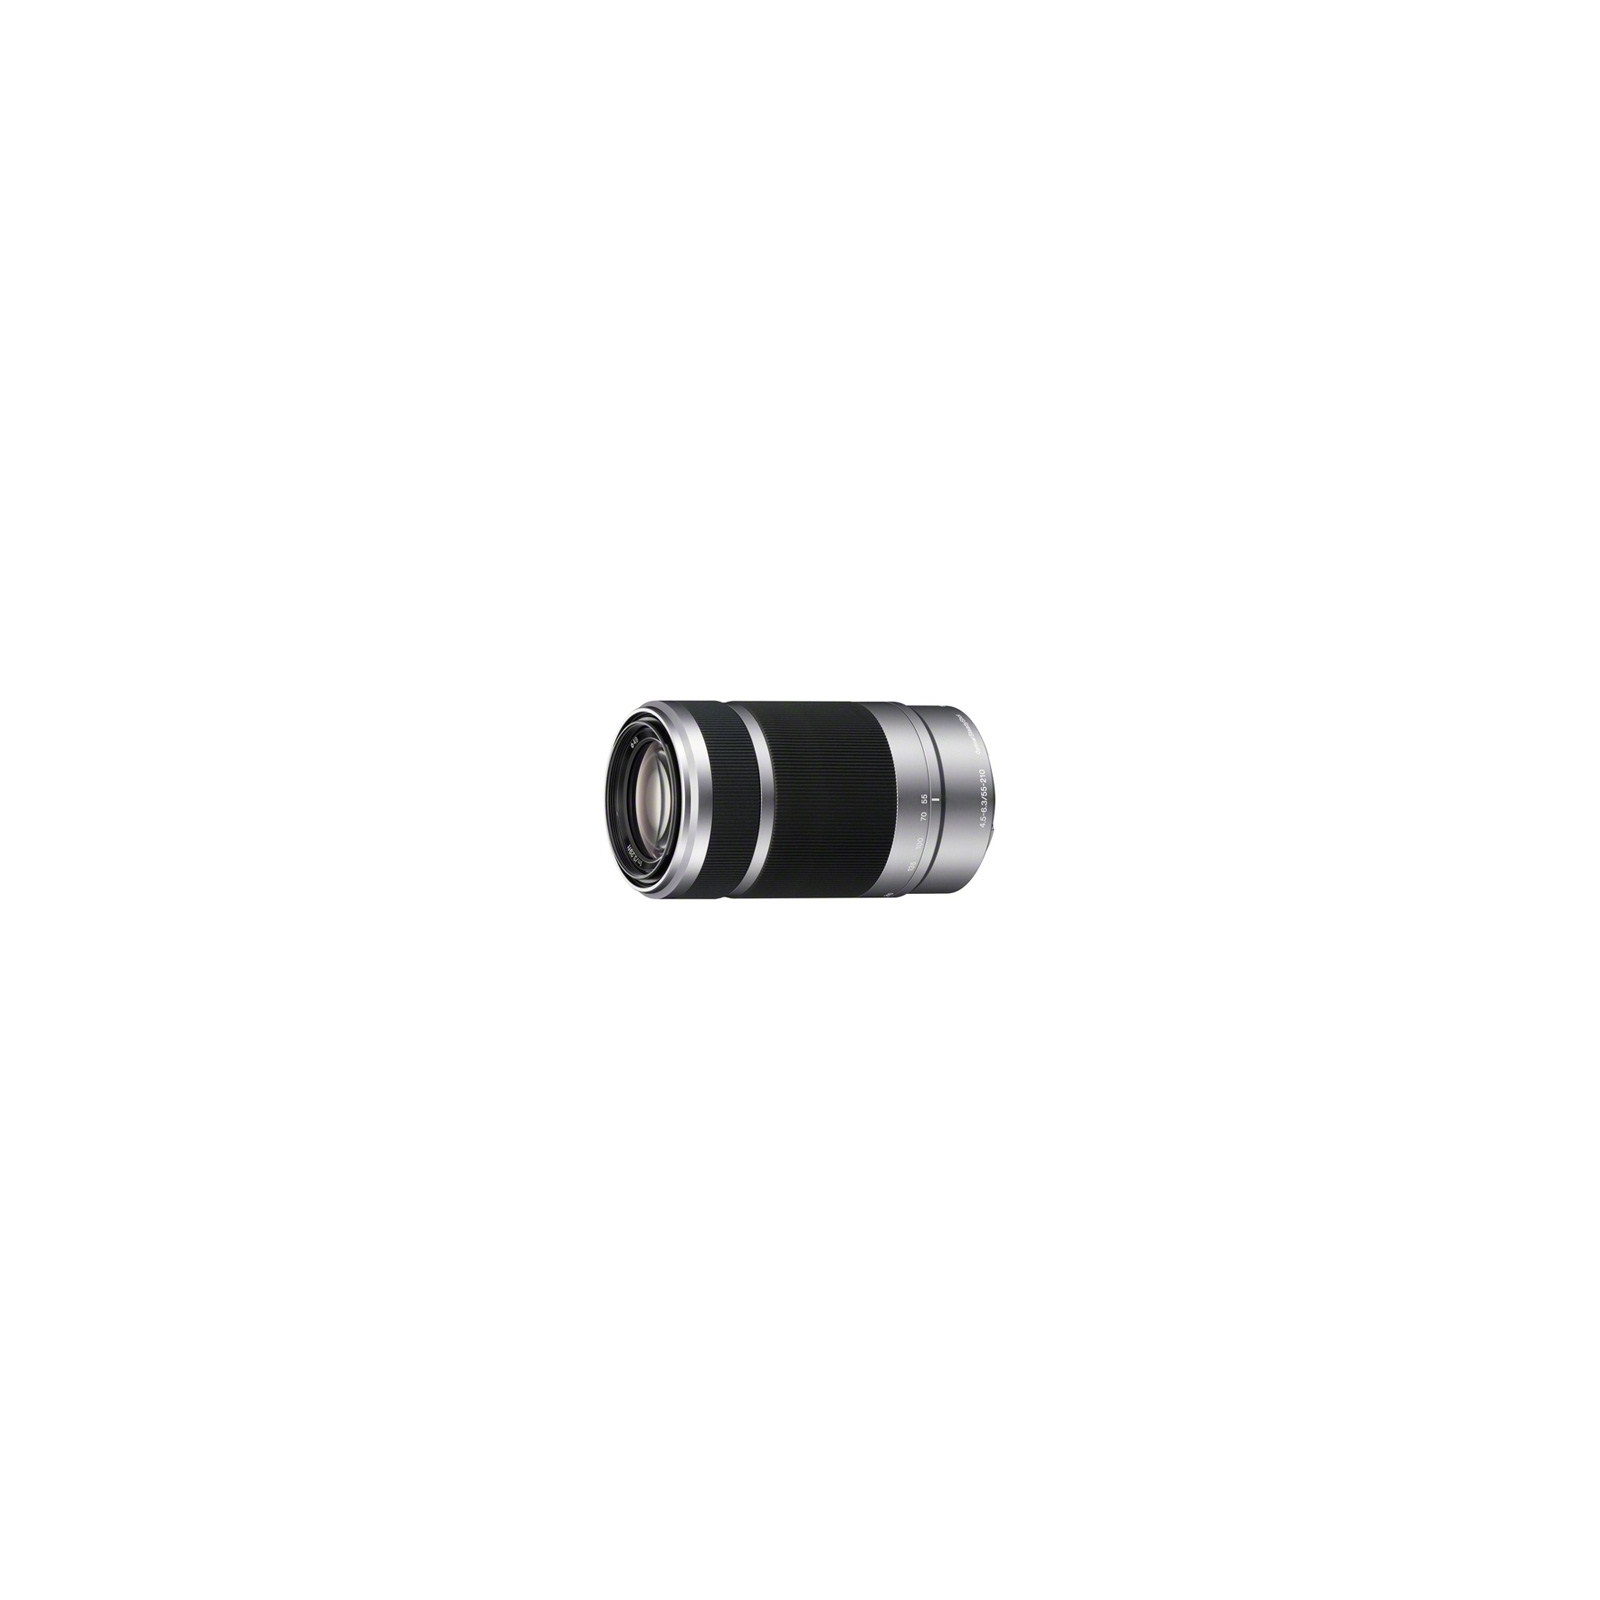 Об'єктив Sony 55-210mm f/4.5-6.3 for NEX (SEL55210.AE)